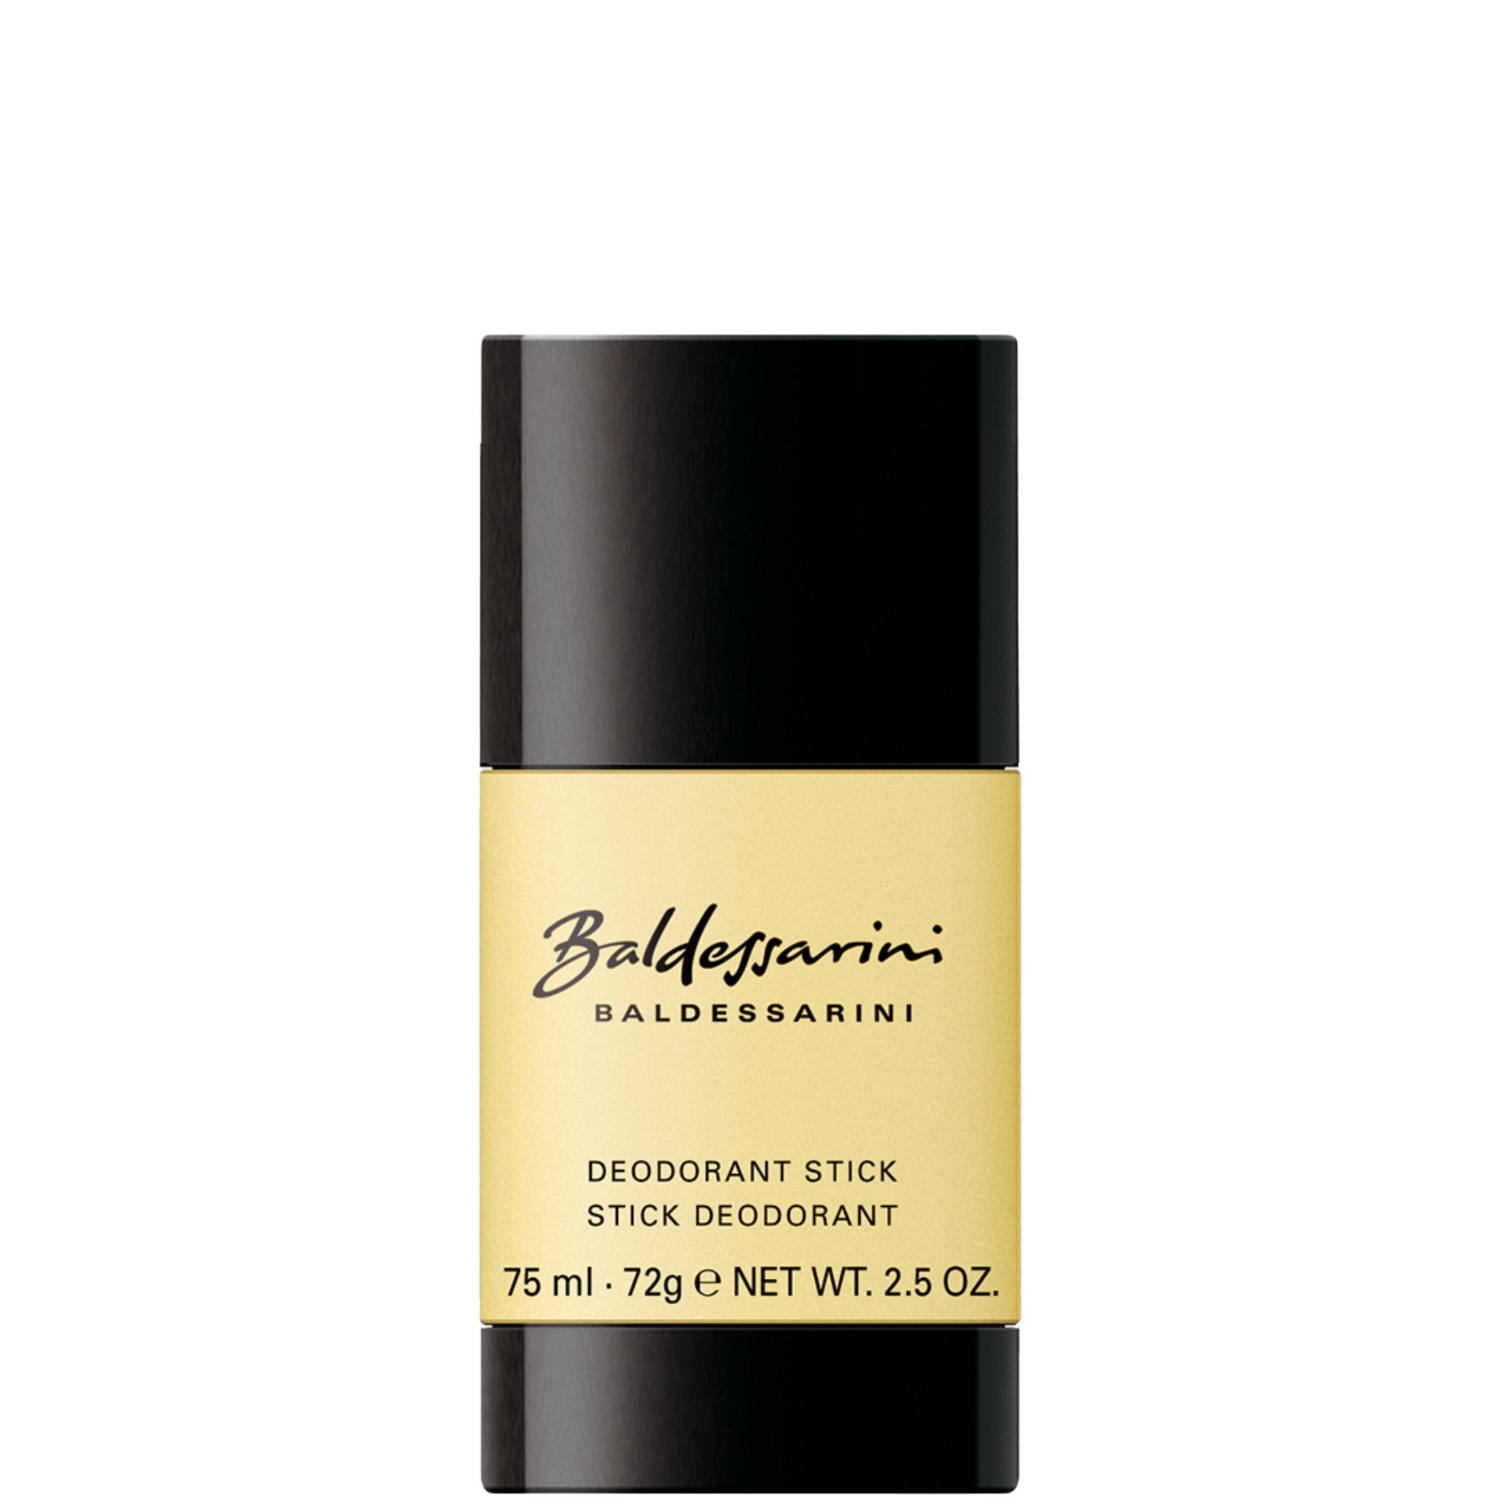 Baldessarini Classic Deodorant Stick 75ml